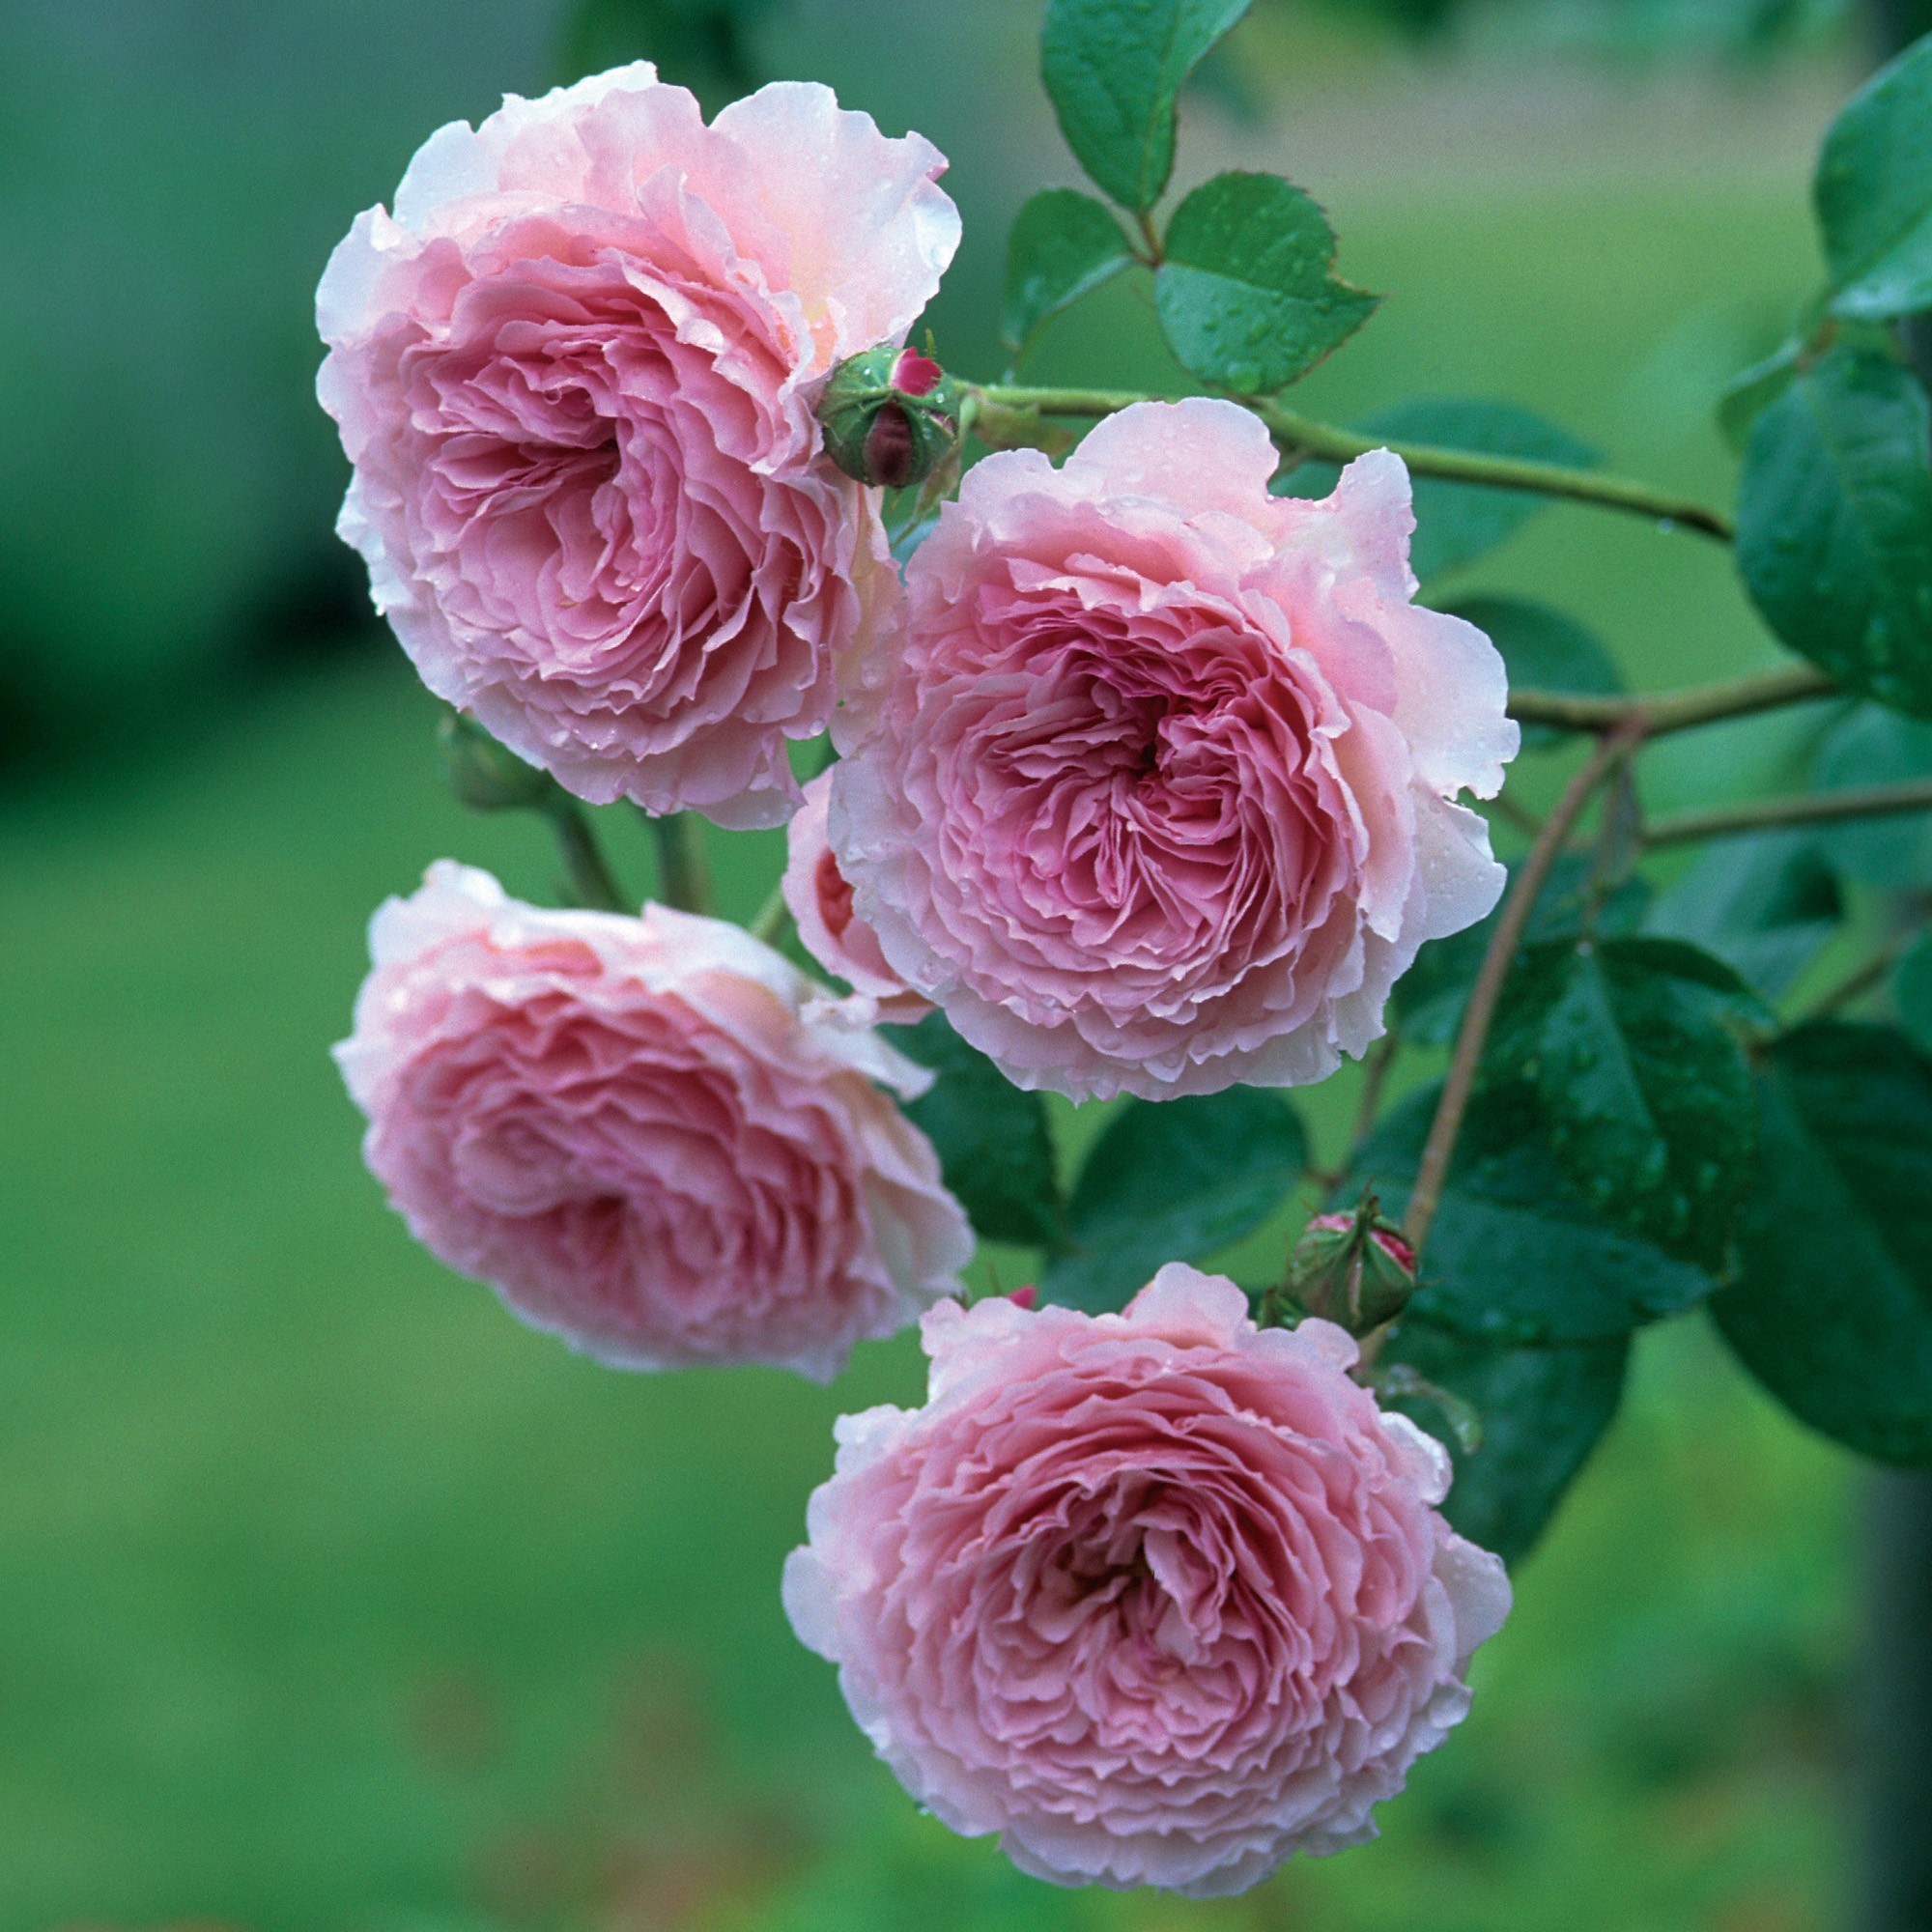 Bạn là tín đồ của hoa hồng leo? Bạn mong muốn tìm kiếm các bức ảnh đẹp nhất về loài hoa này? Hãy truy cập bộ sưu tập \